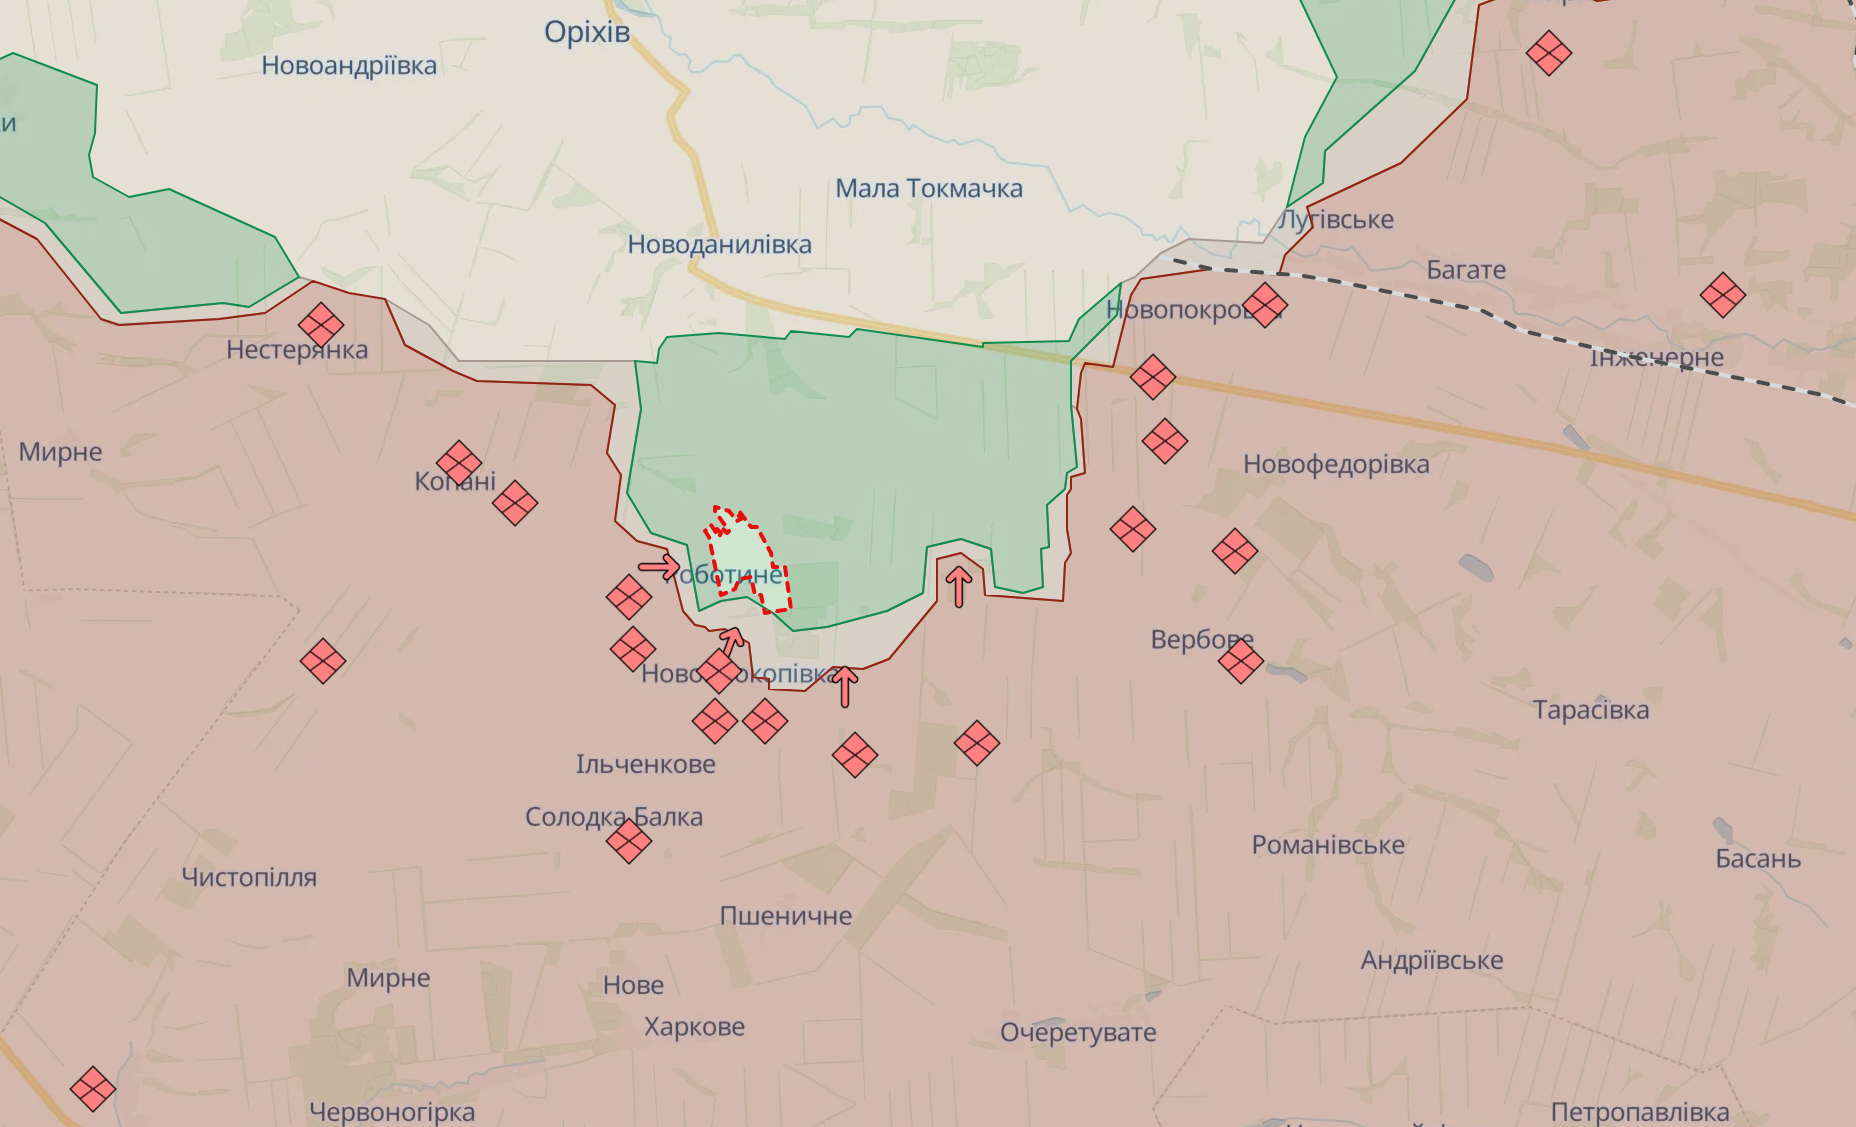 Оккупанты снова расстреляли украинских бойцов, на этот раз возле Работино: в DeepState рассказали о преступлении врага